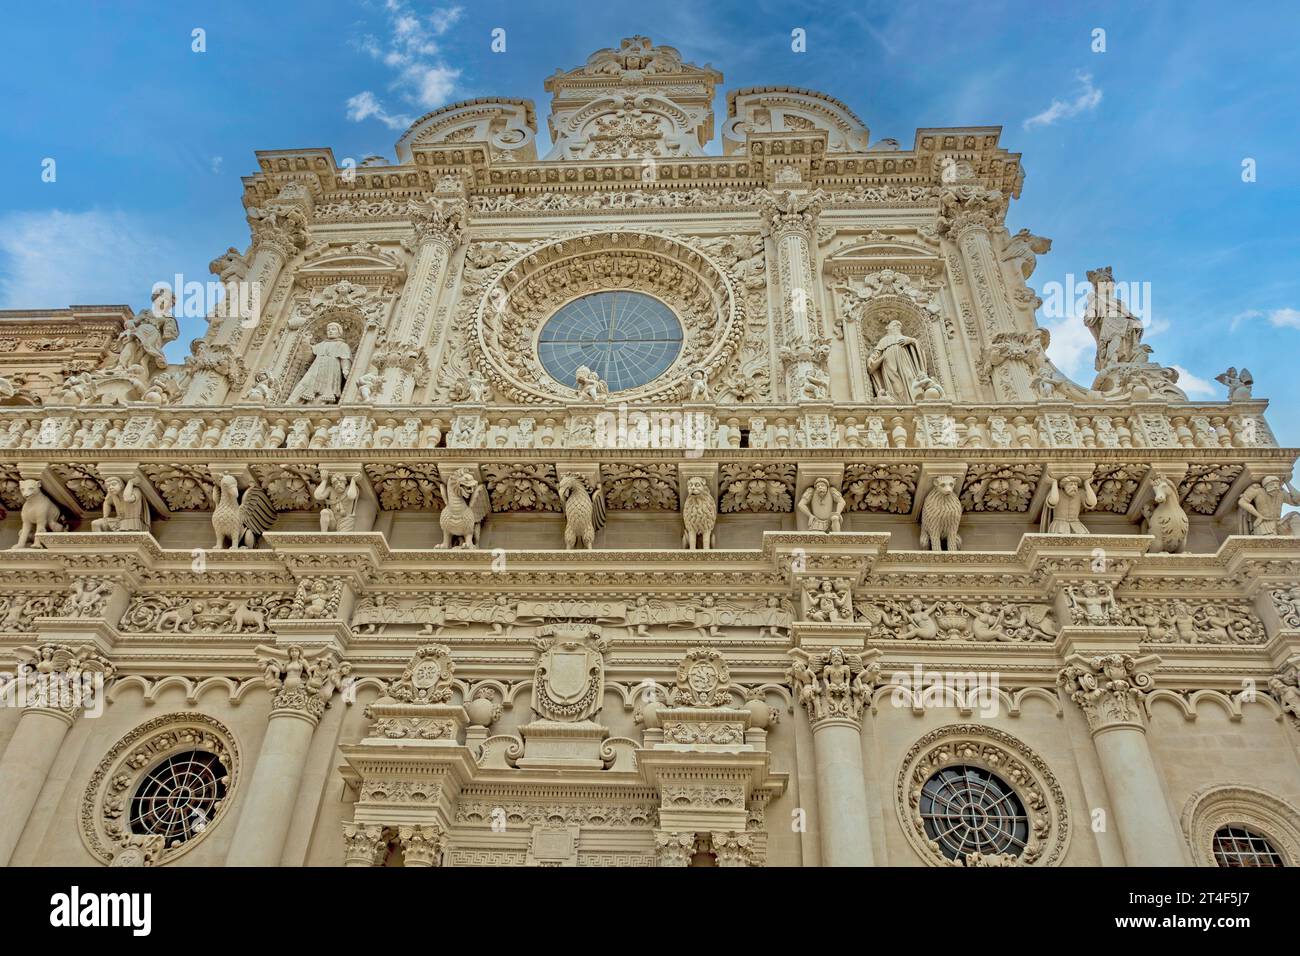 L'intricata opera in pietra della Basilica di Santa Croce Lecce, Italia. Risalente al XVII secolo, l'edificio è costruito con pietra calcarea locale, Foto Stock